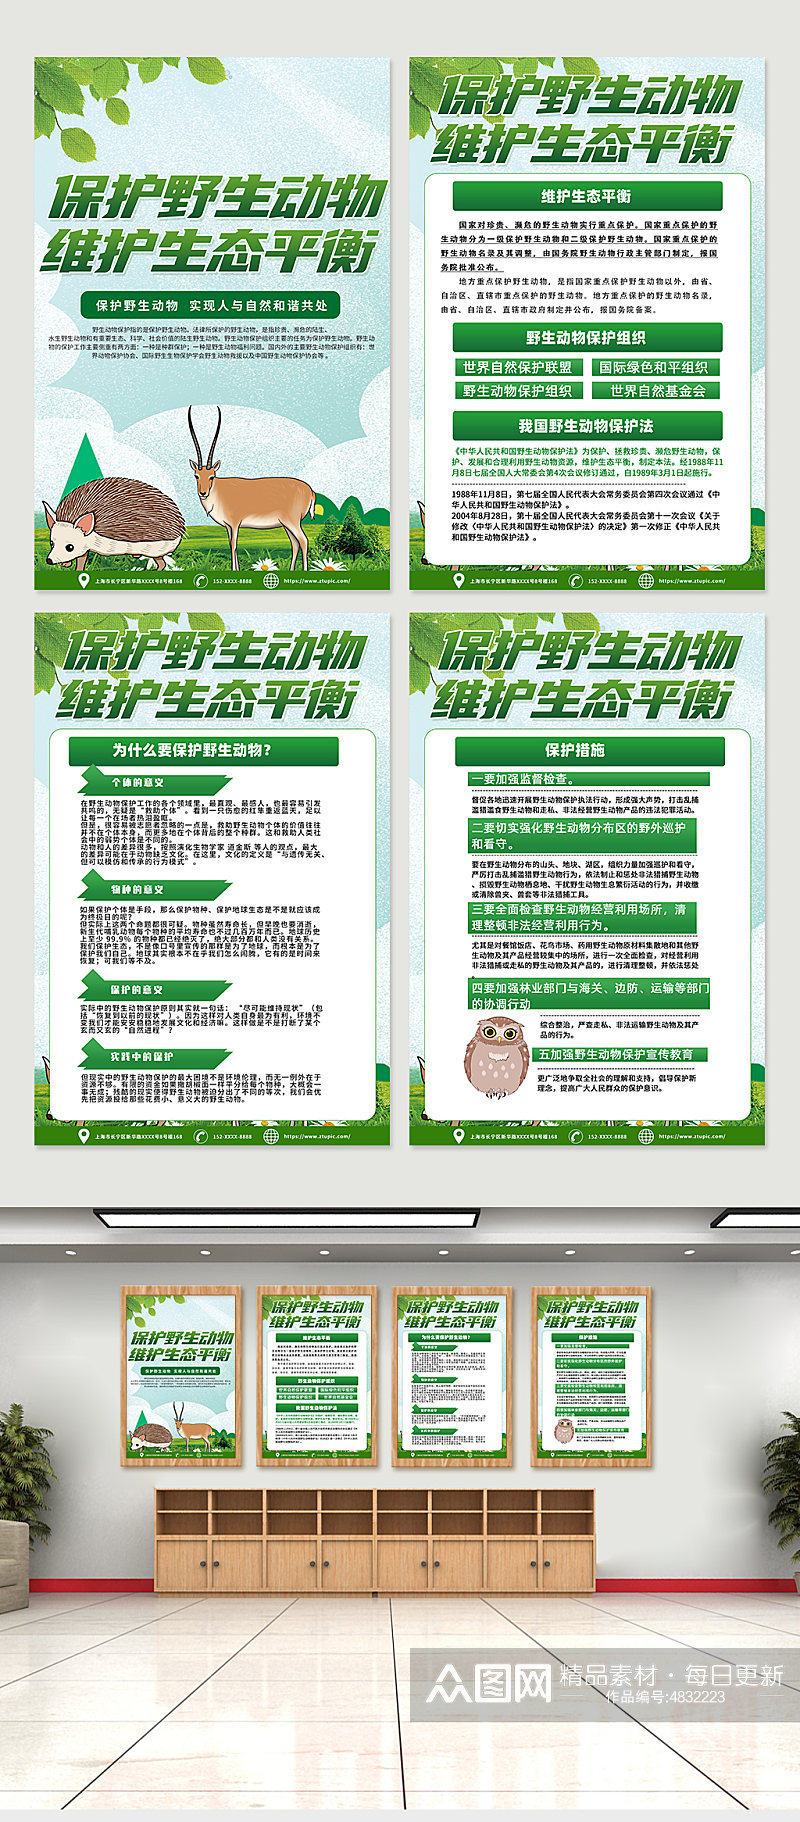 高端时尚保护野生动物宣传海报设计素材